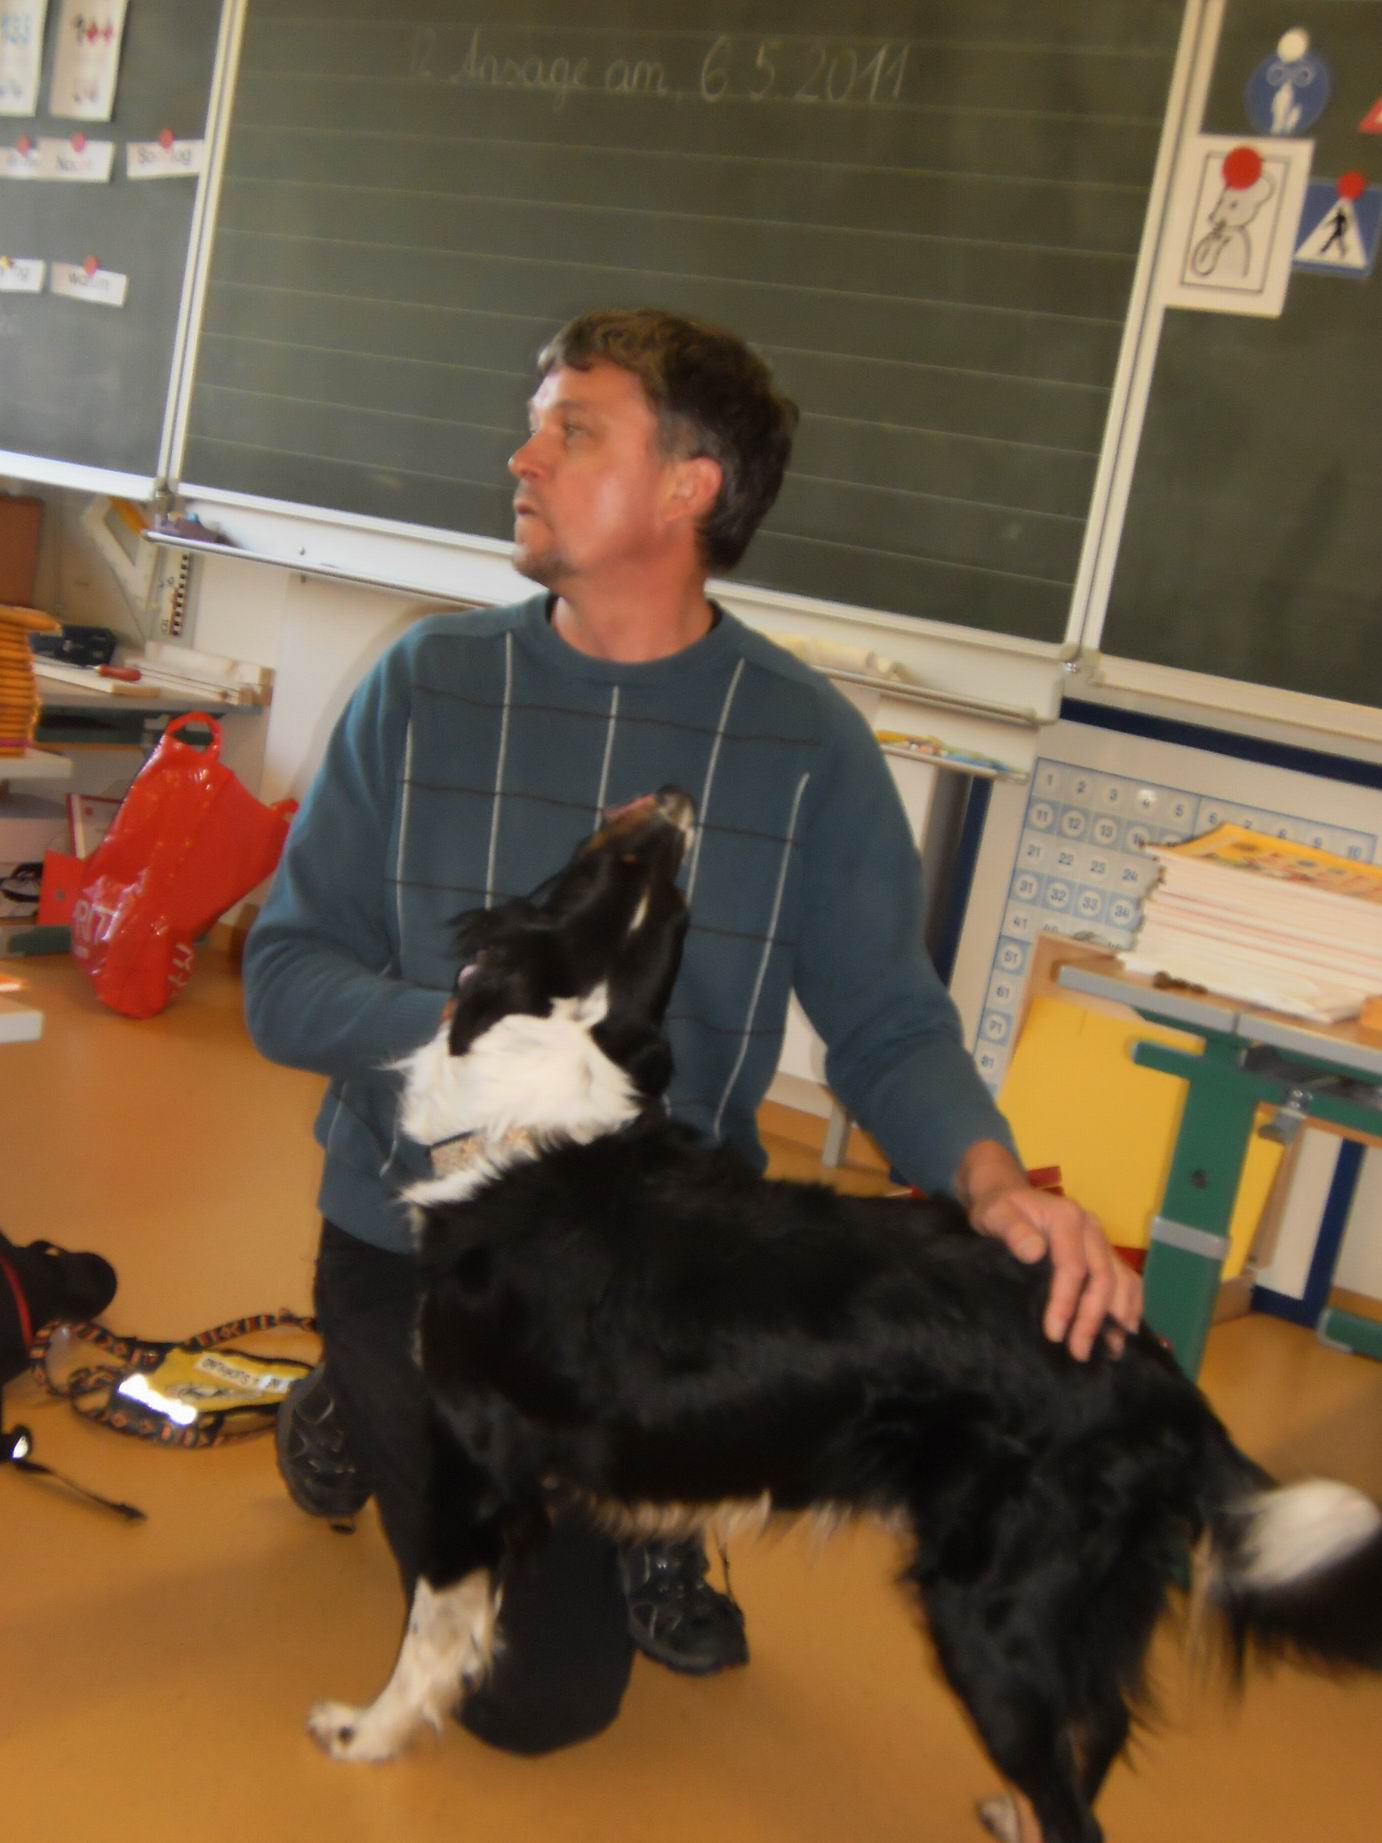 Suchhundeverein "EURINOS" besucht die VS